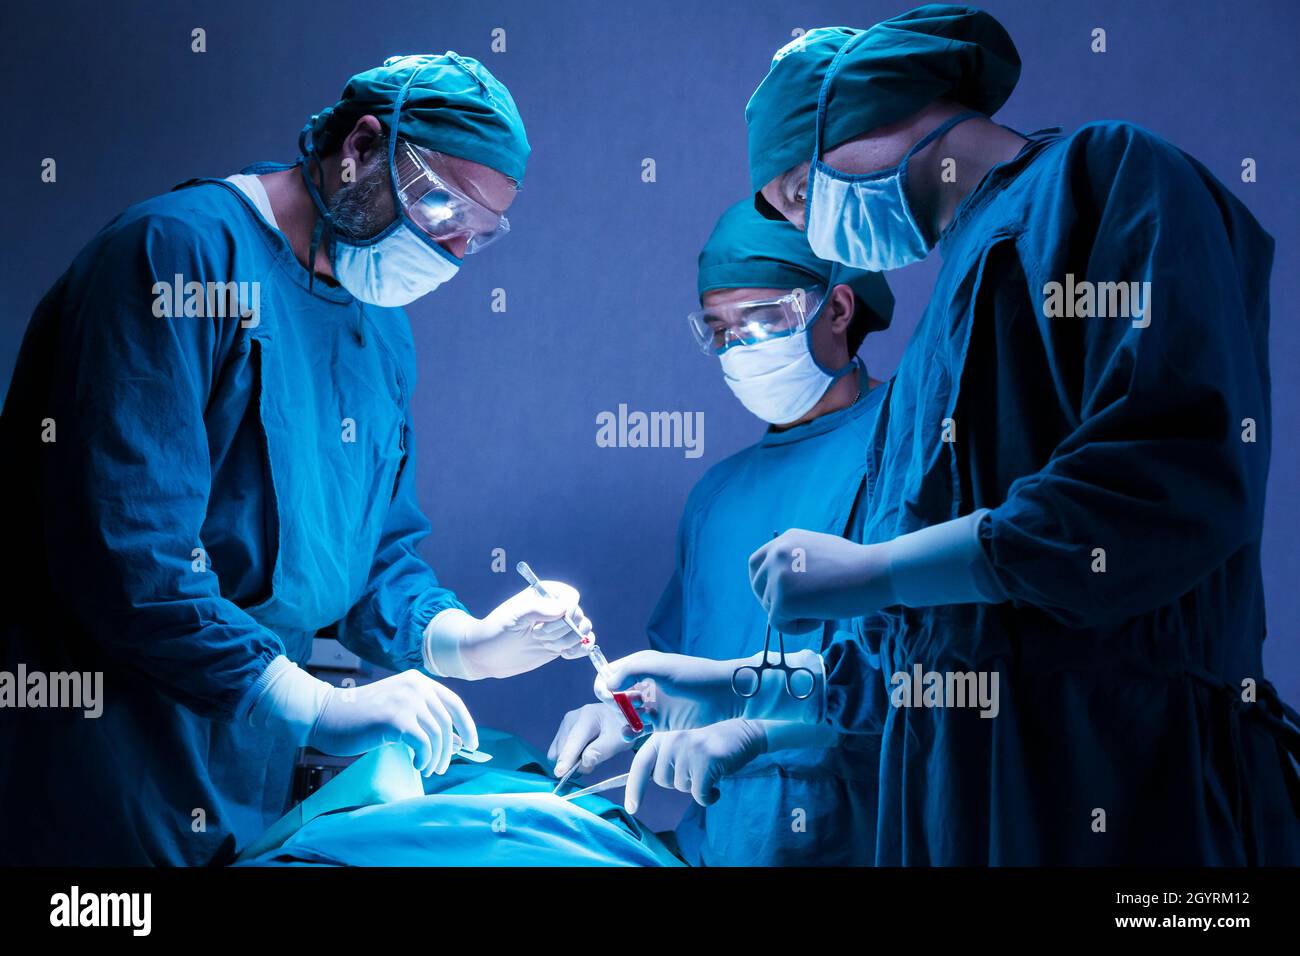 Konzentriertes professionelles chirurgisches Ärzteteam Operationschirurgie ein Patient im Operationssaal des Krankenhauses. Gesundheitswesen und medizinisches Konzept. Stockfoto